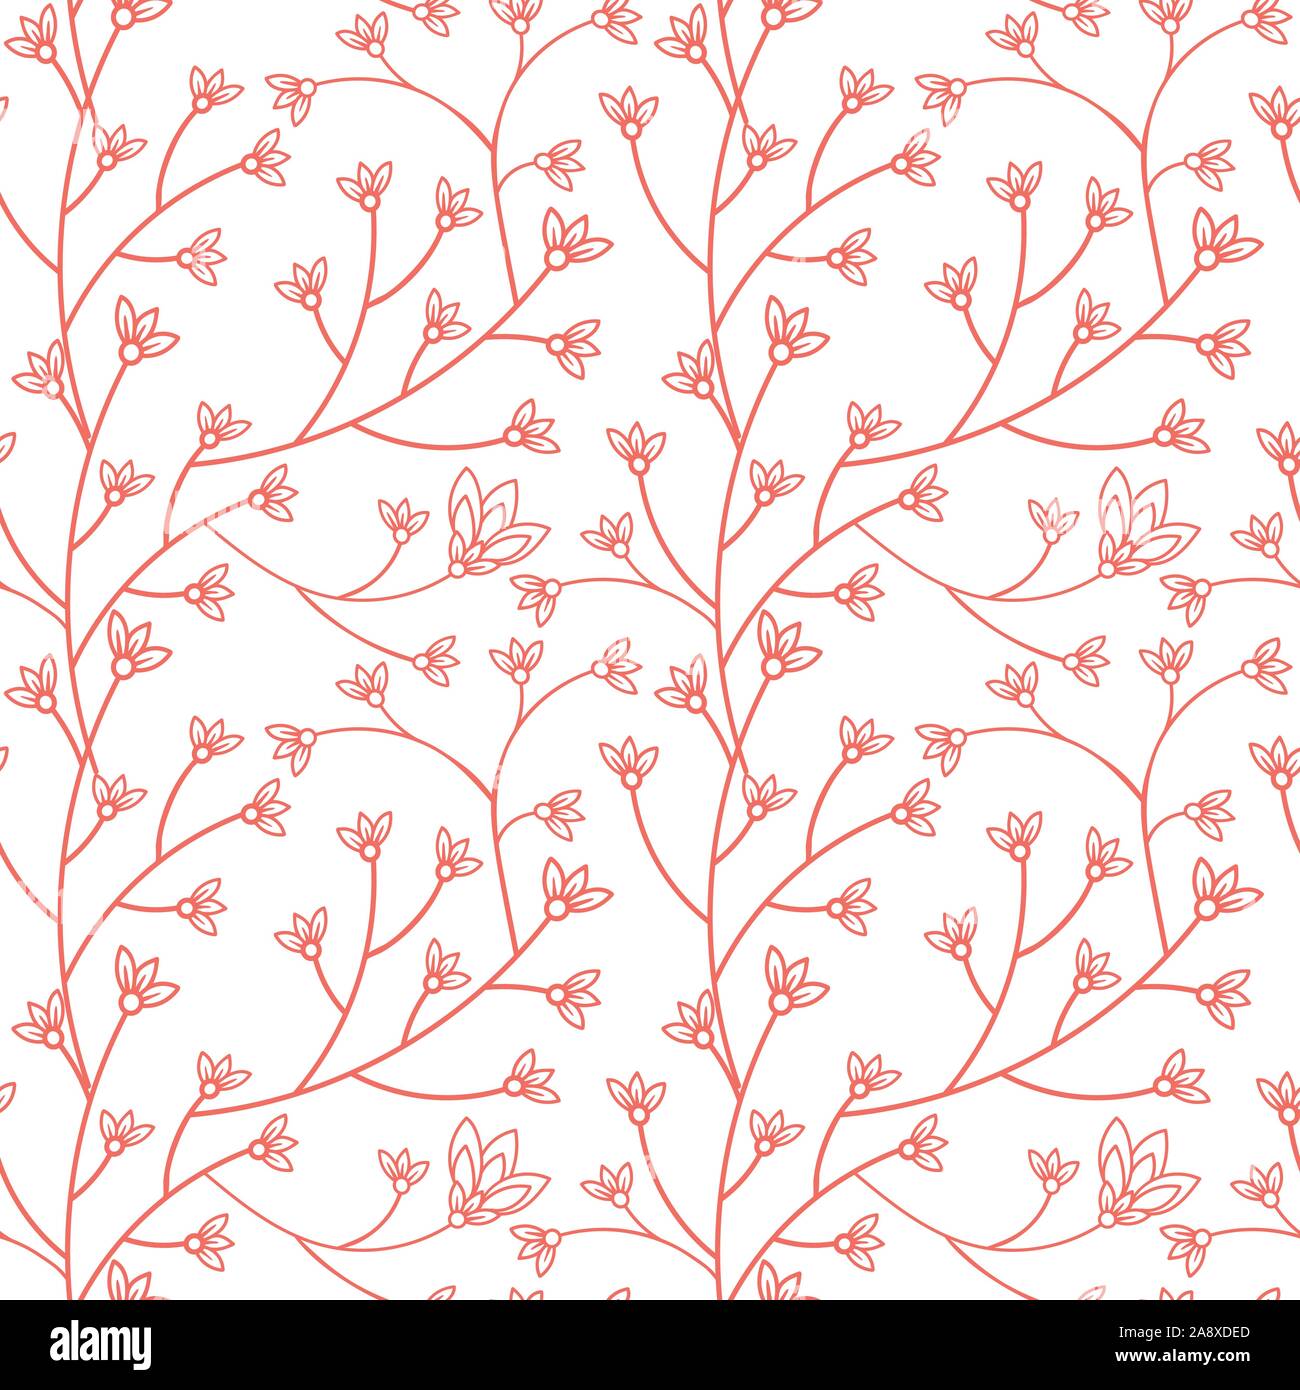 Nahtlose Muster Floral Design. Zweig mit kleinen Blüten und Blätter. Hand gezeichnet doodle Blumen. Farbpalette lebende Koralle. Vector Illustration. Stock Vektor